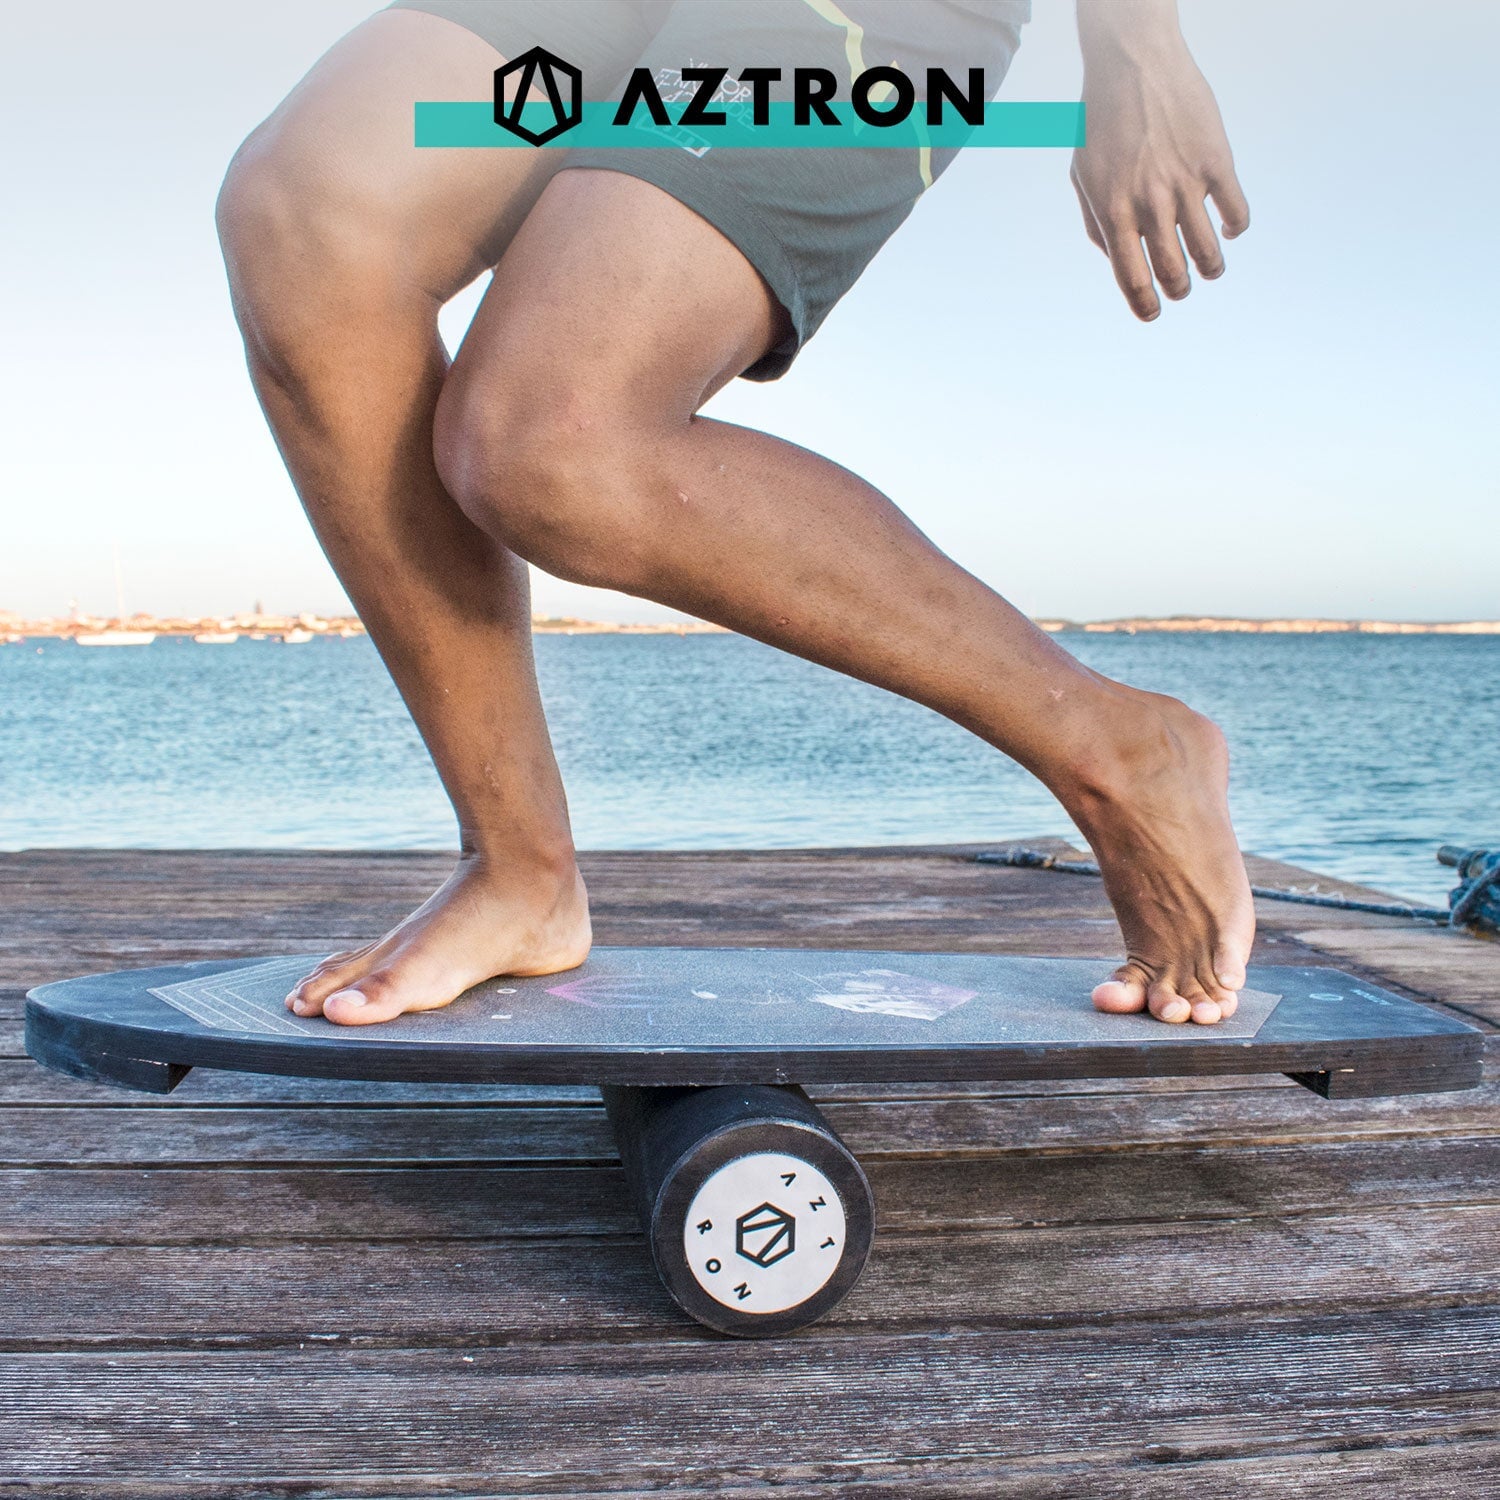 Aztron COSMOS Balance Board